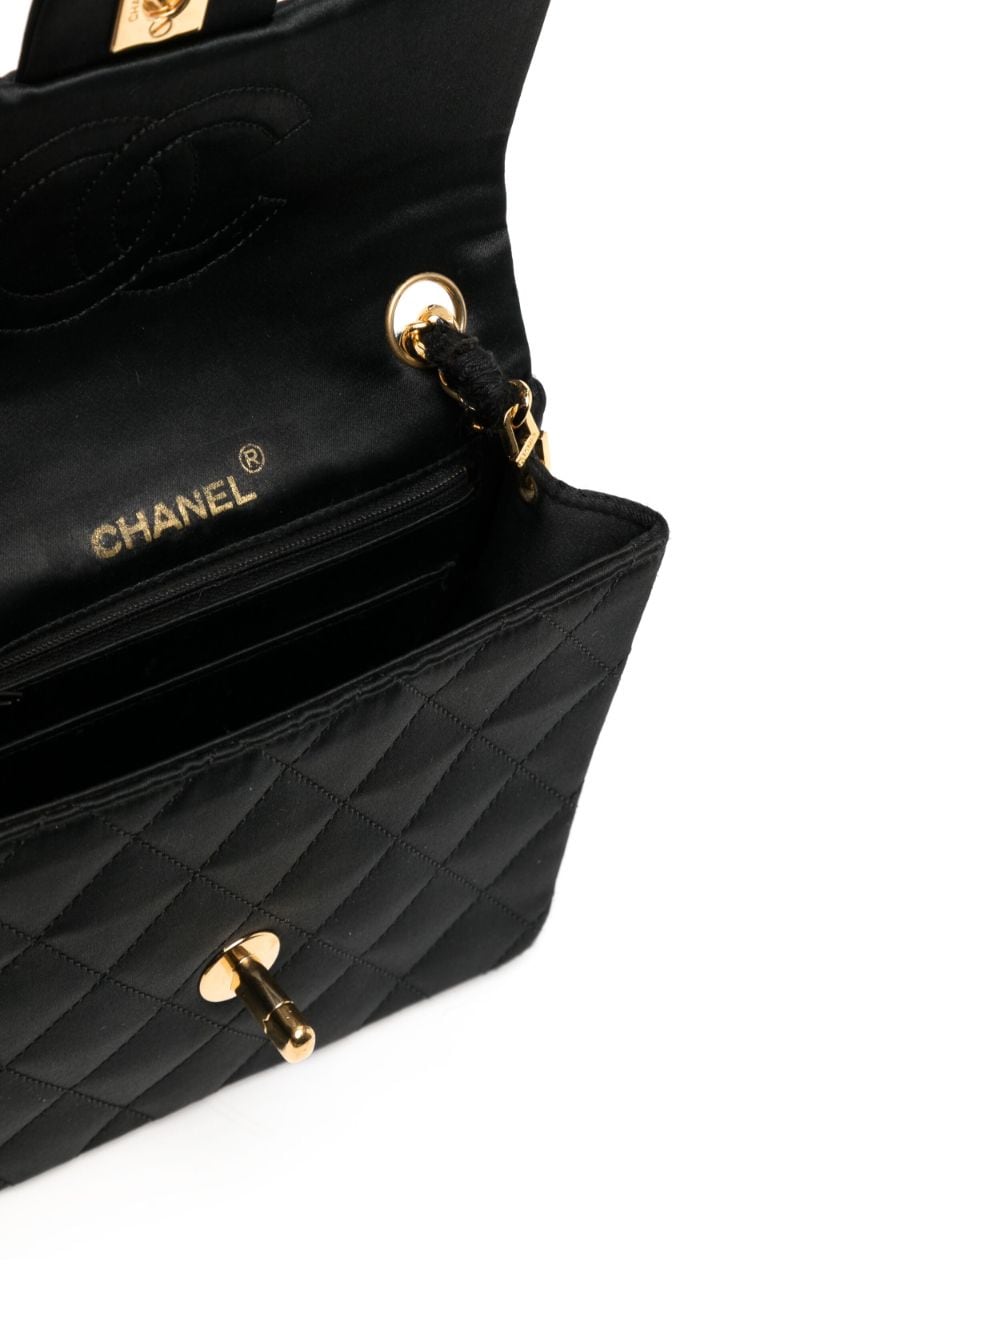 Chanel Women's Shoulder Bag